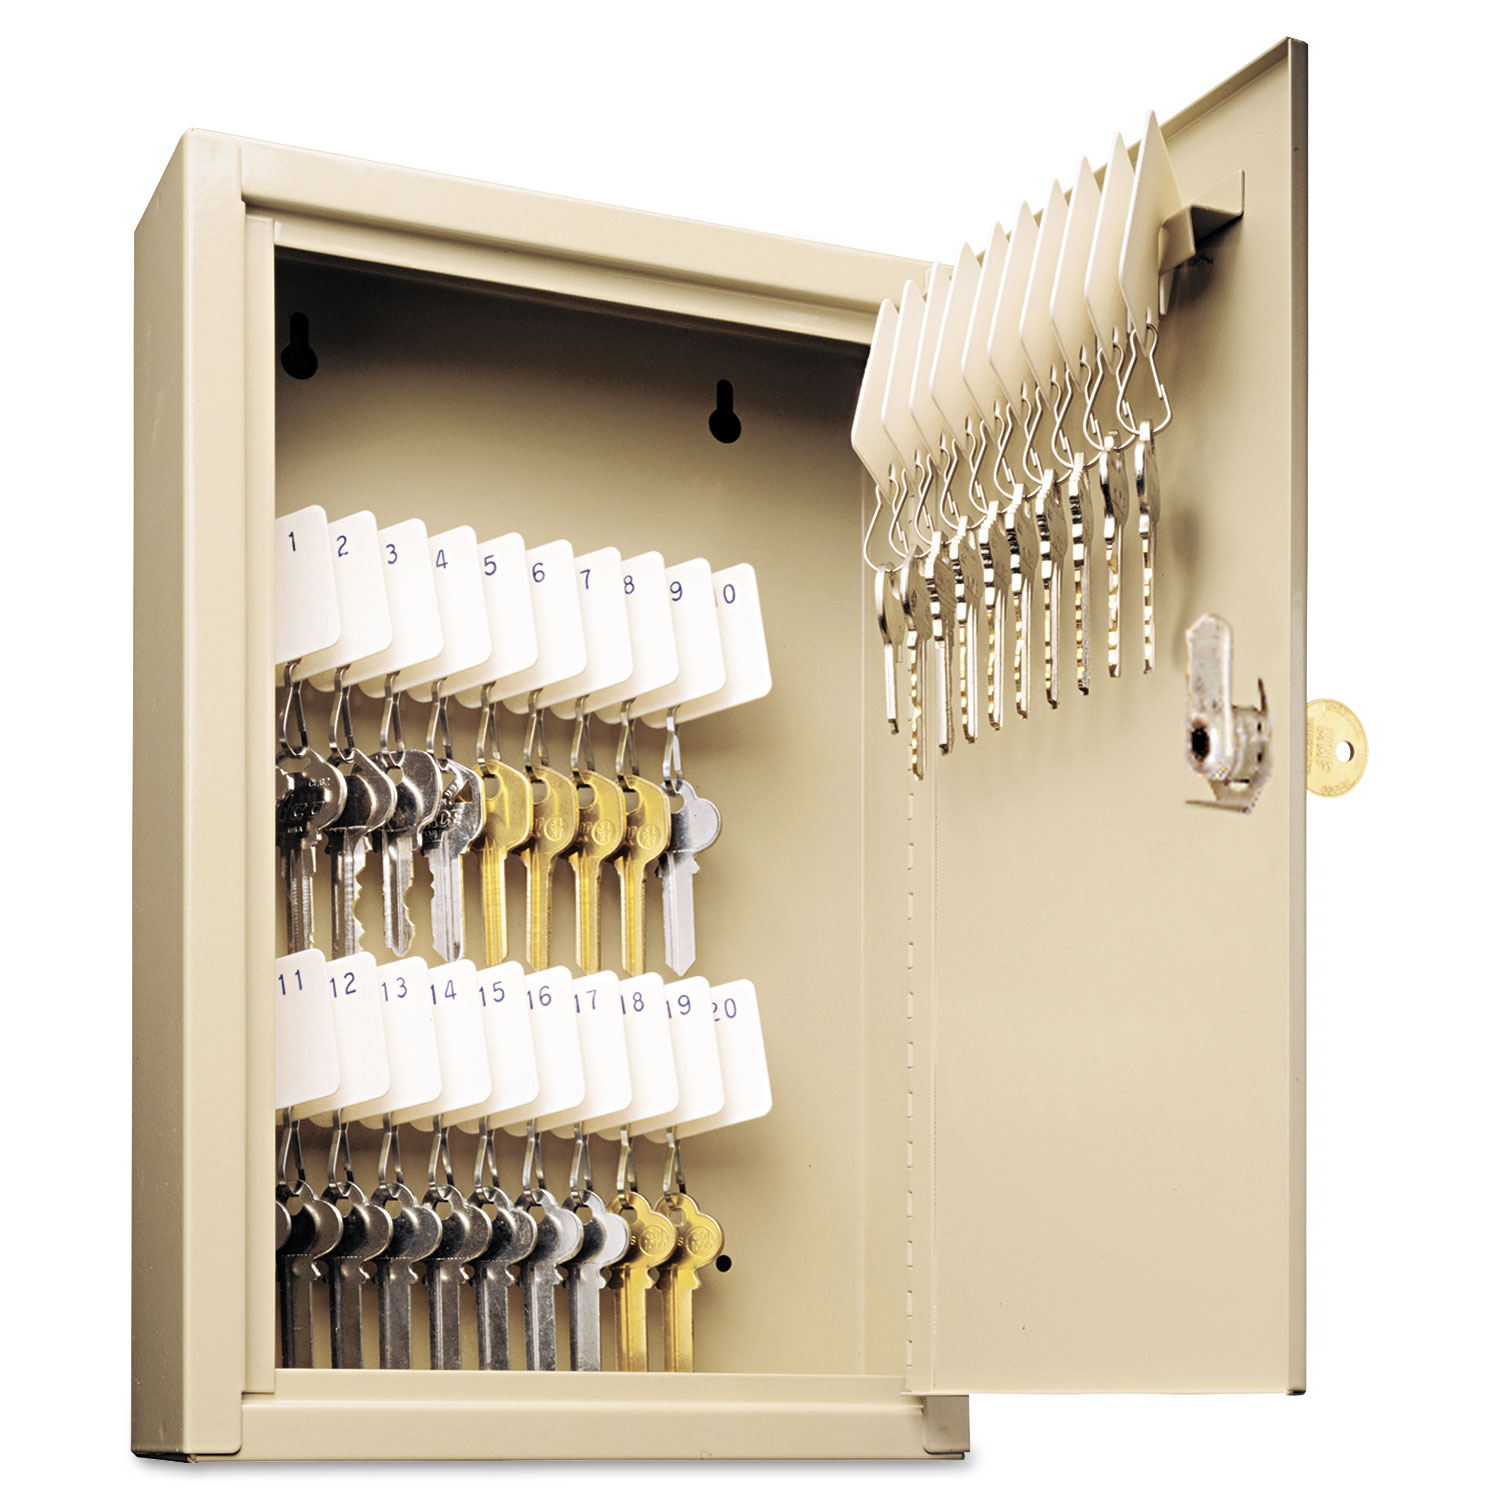  SteelMaster 201903003 Uni-Tag Key Cabinet, 30-Key, Steel, Sand, 8 x 2 5/8 x 12 1/8 (MMF201903003) 